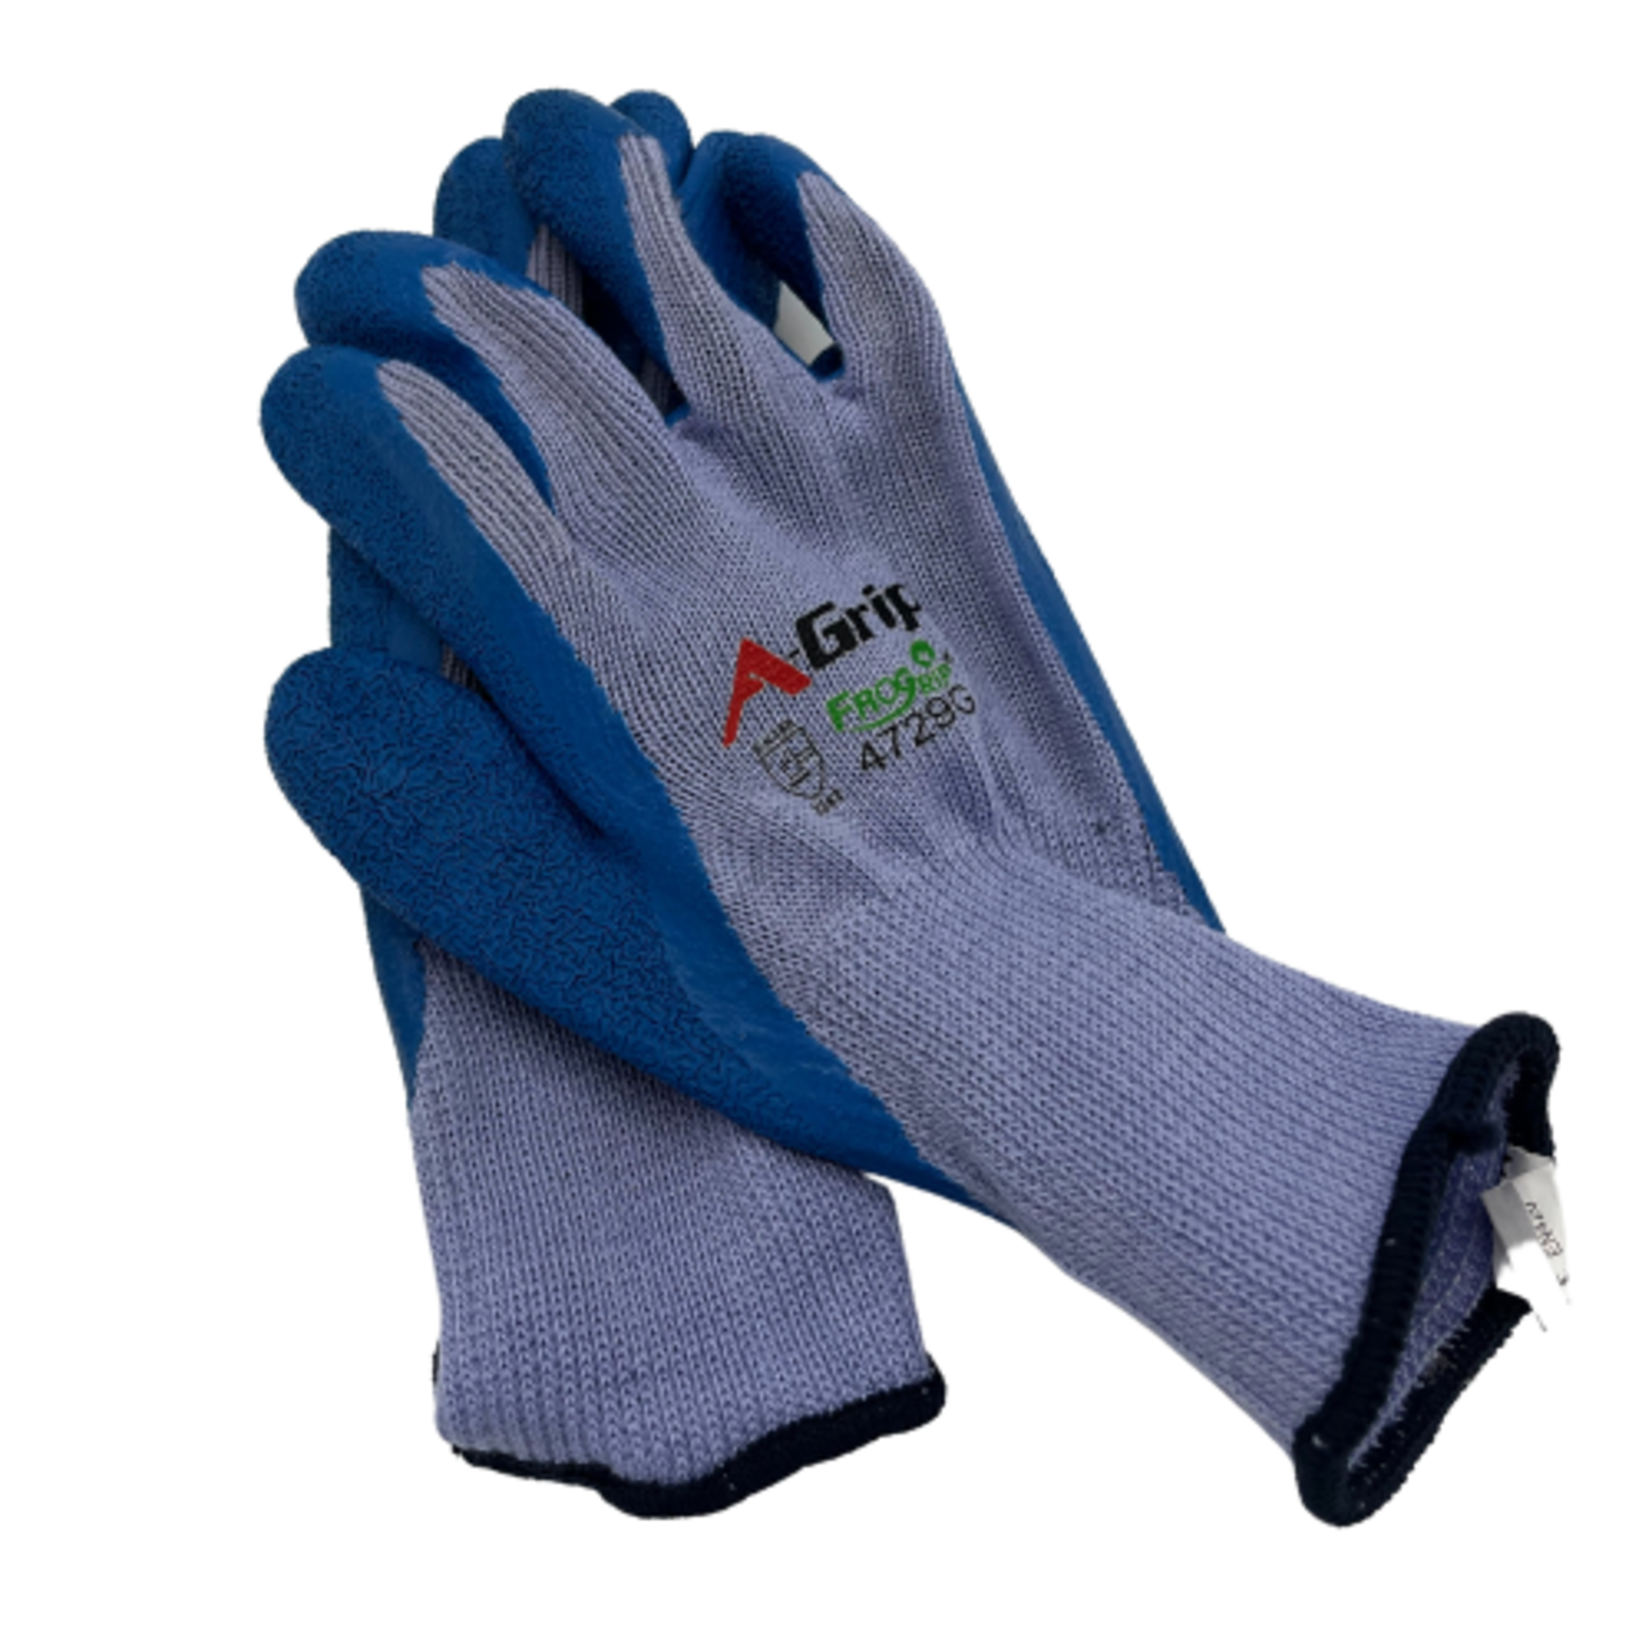 Industrial Work Glove XL